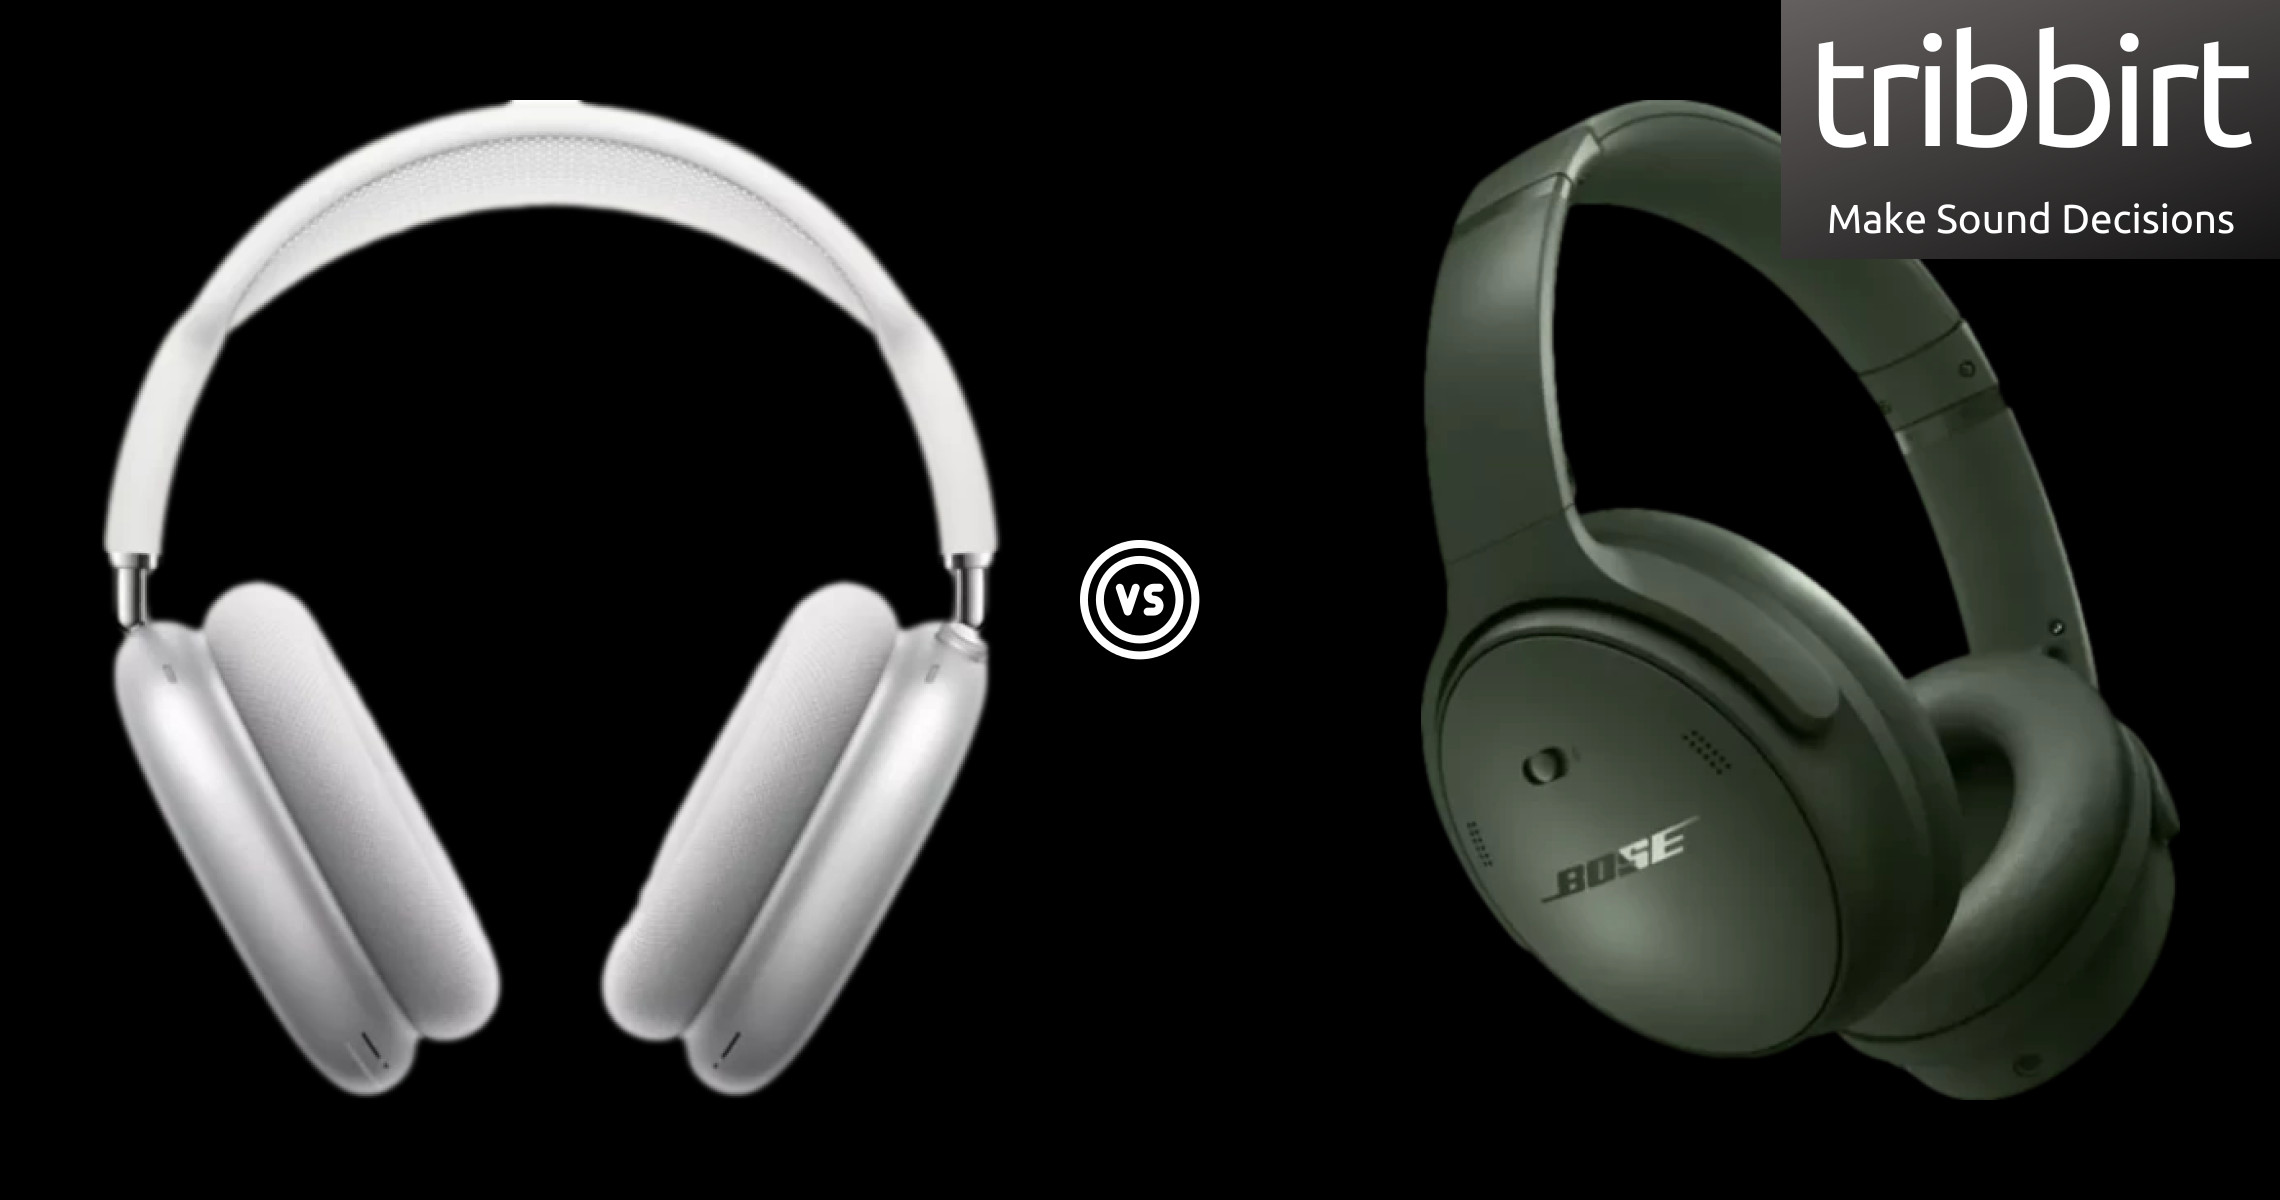  Bose Quietcomfort Headphones Vs. Apple Airpods Max